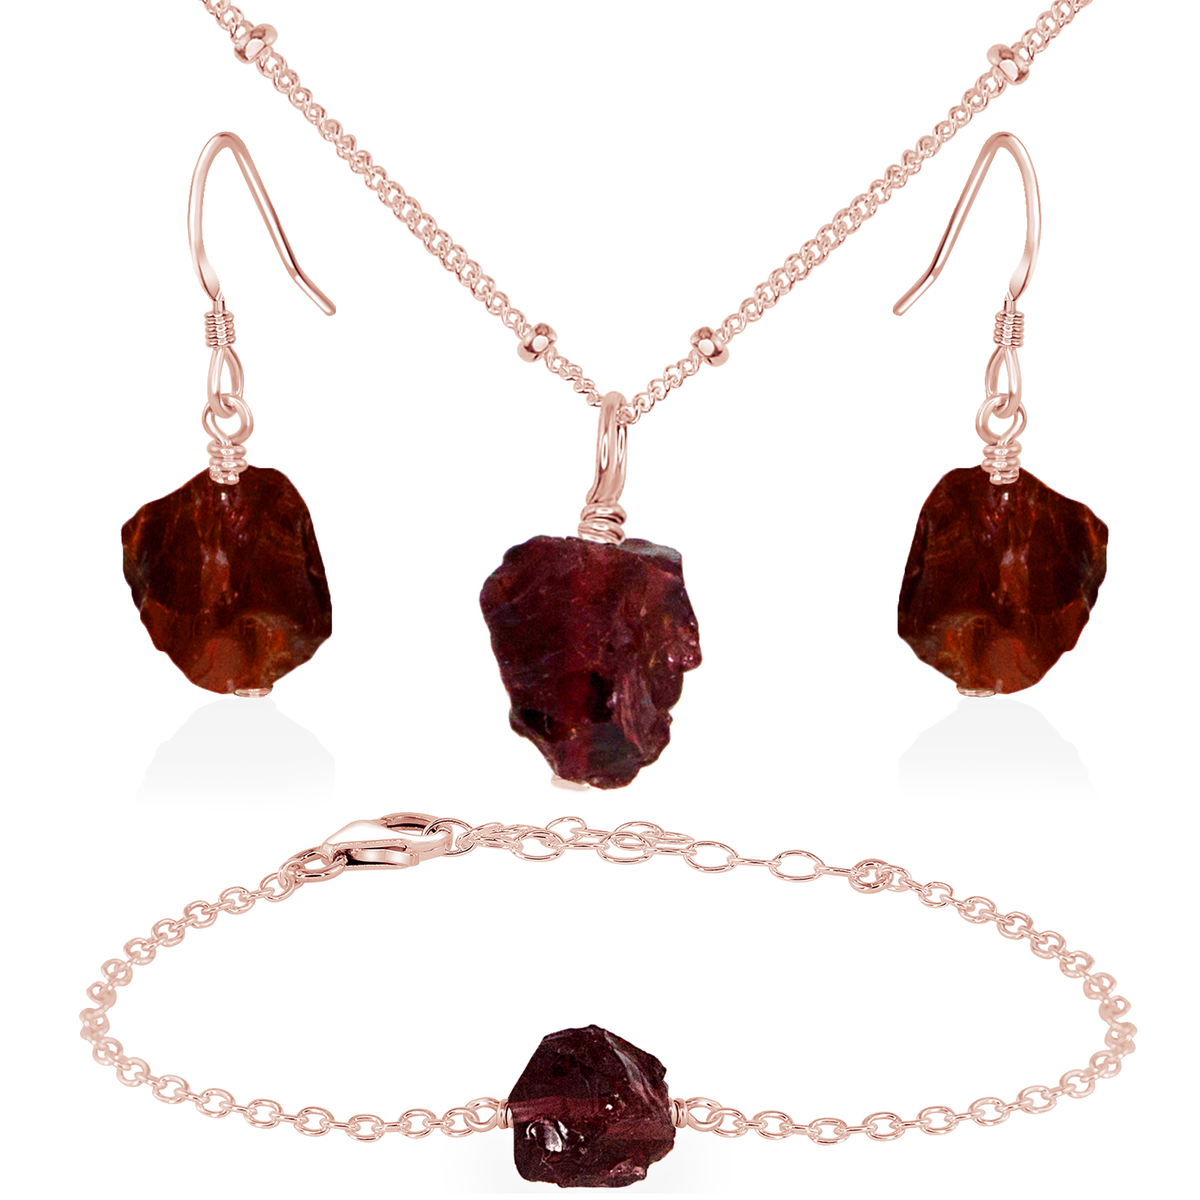 Raw Garnet Crystal Jewellery Set - Raw Garnet Crystal Jewellery Set - 14k Rose Gold Fill / Satellite / Necklace & Earrings & Bracelet - Luna Tide Handmade Crystal Jewellery